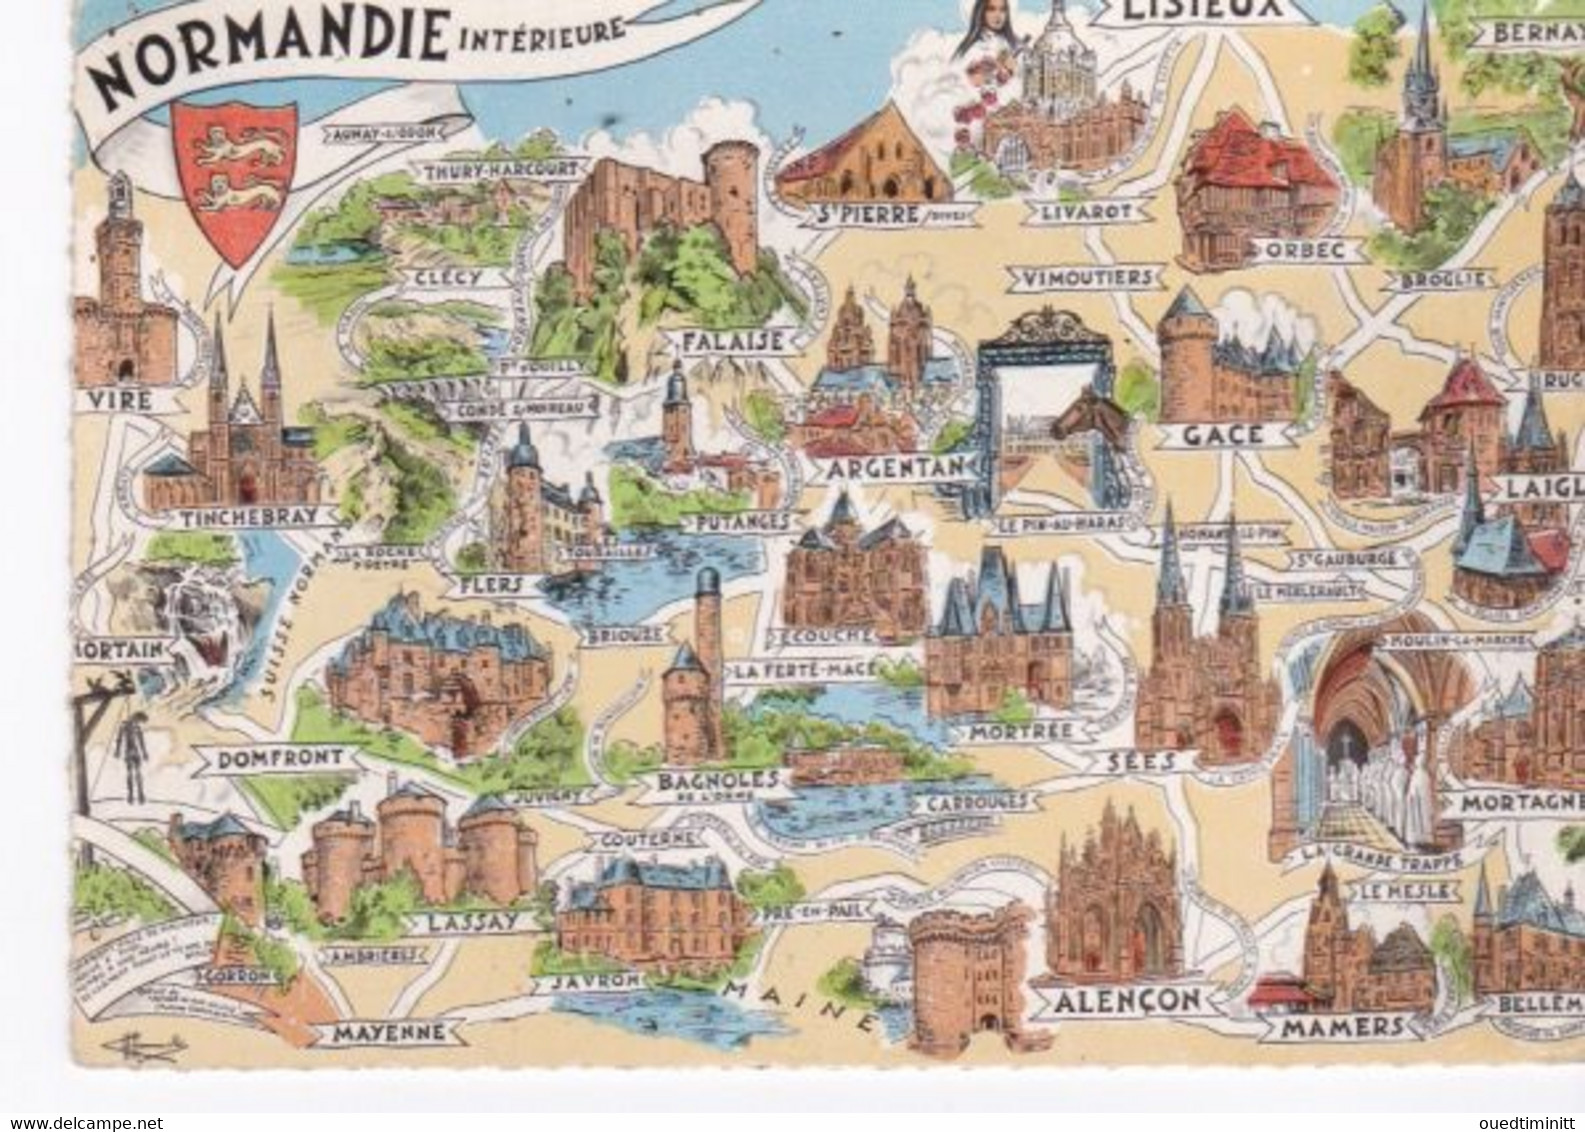 Carte Géographique De La Normandie Intérieure. Cpsm. 1968. - Landkarten